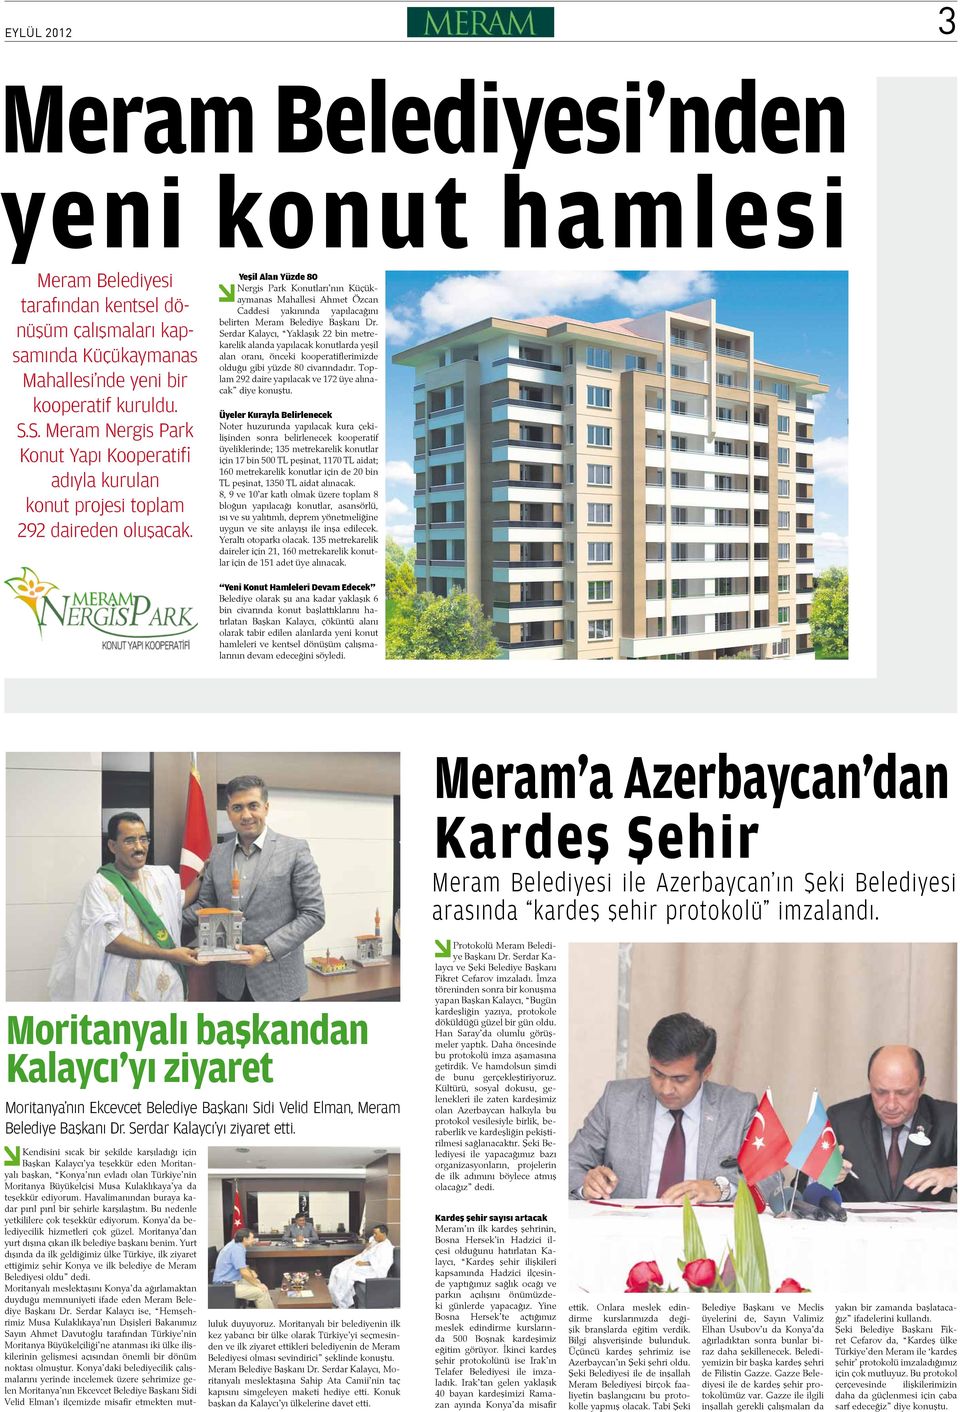 Yeşil Alan Yüzde 80 Nergis Park Konutları nın Küçükaymanas Mahallesi Ahmet Özcan Caddesi yakınında yapılacağını belirten Meram Belediye Başkanı Dr.